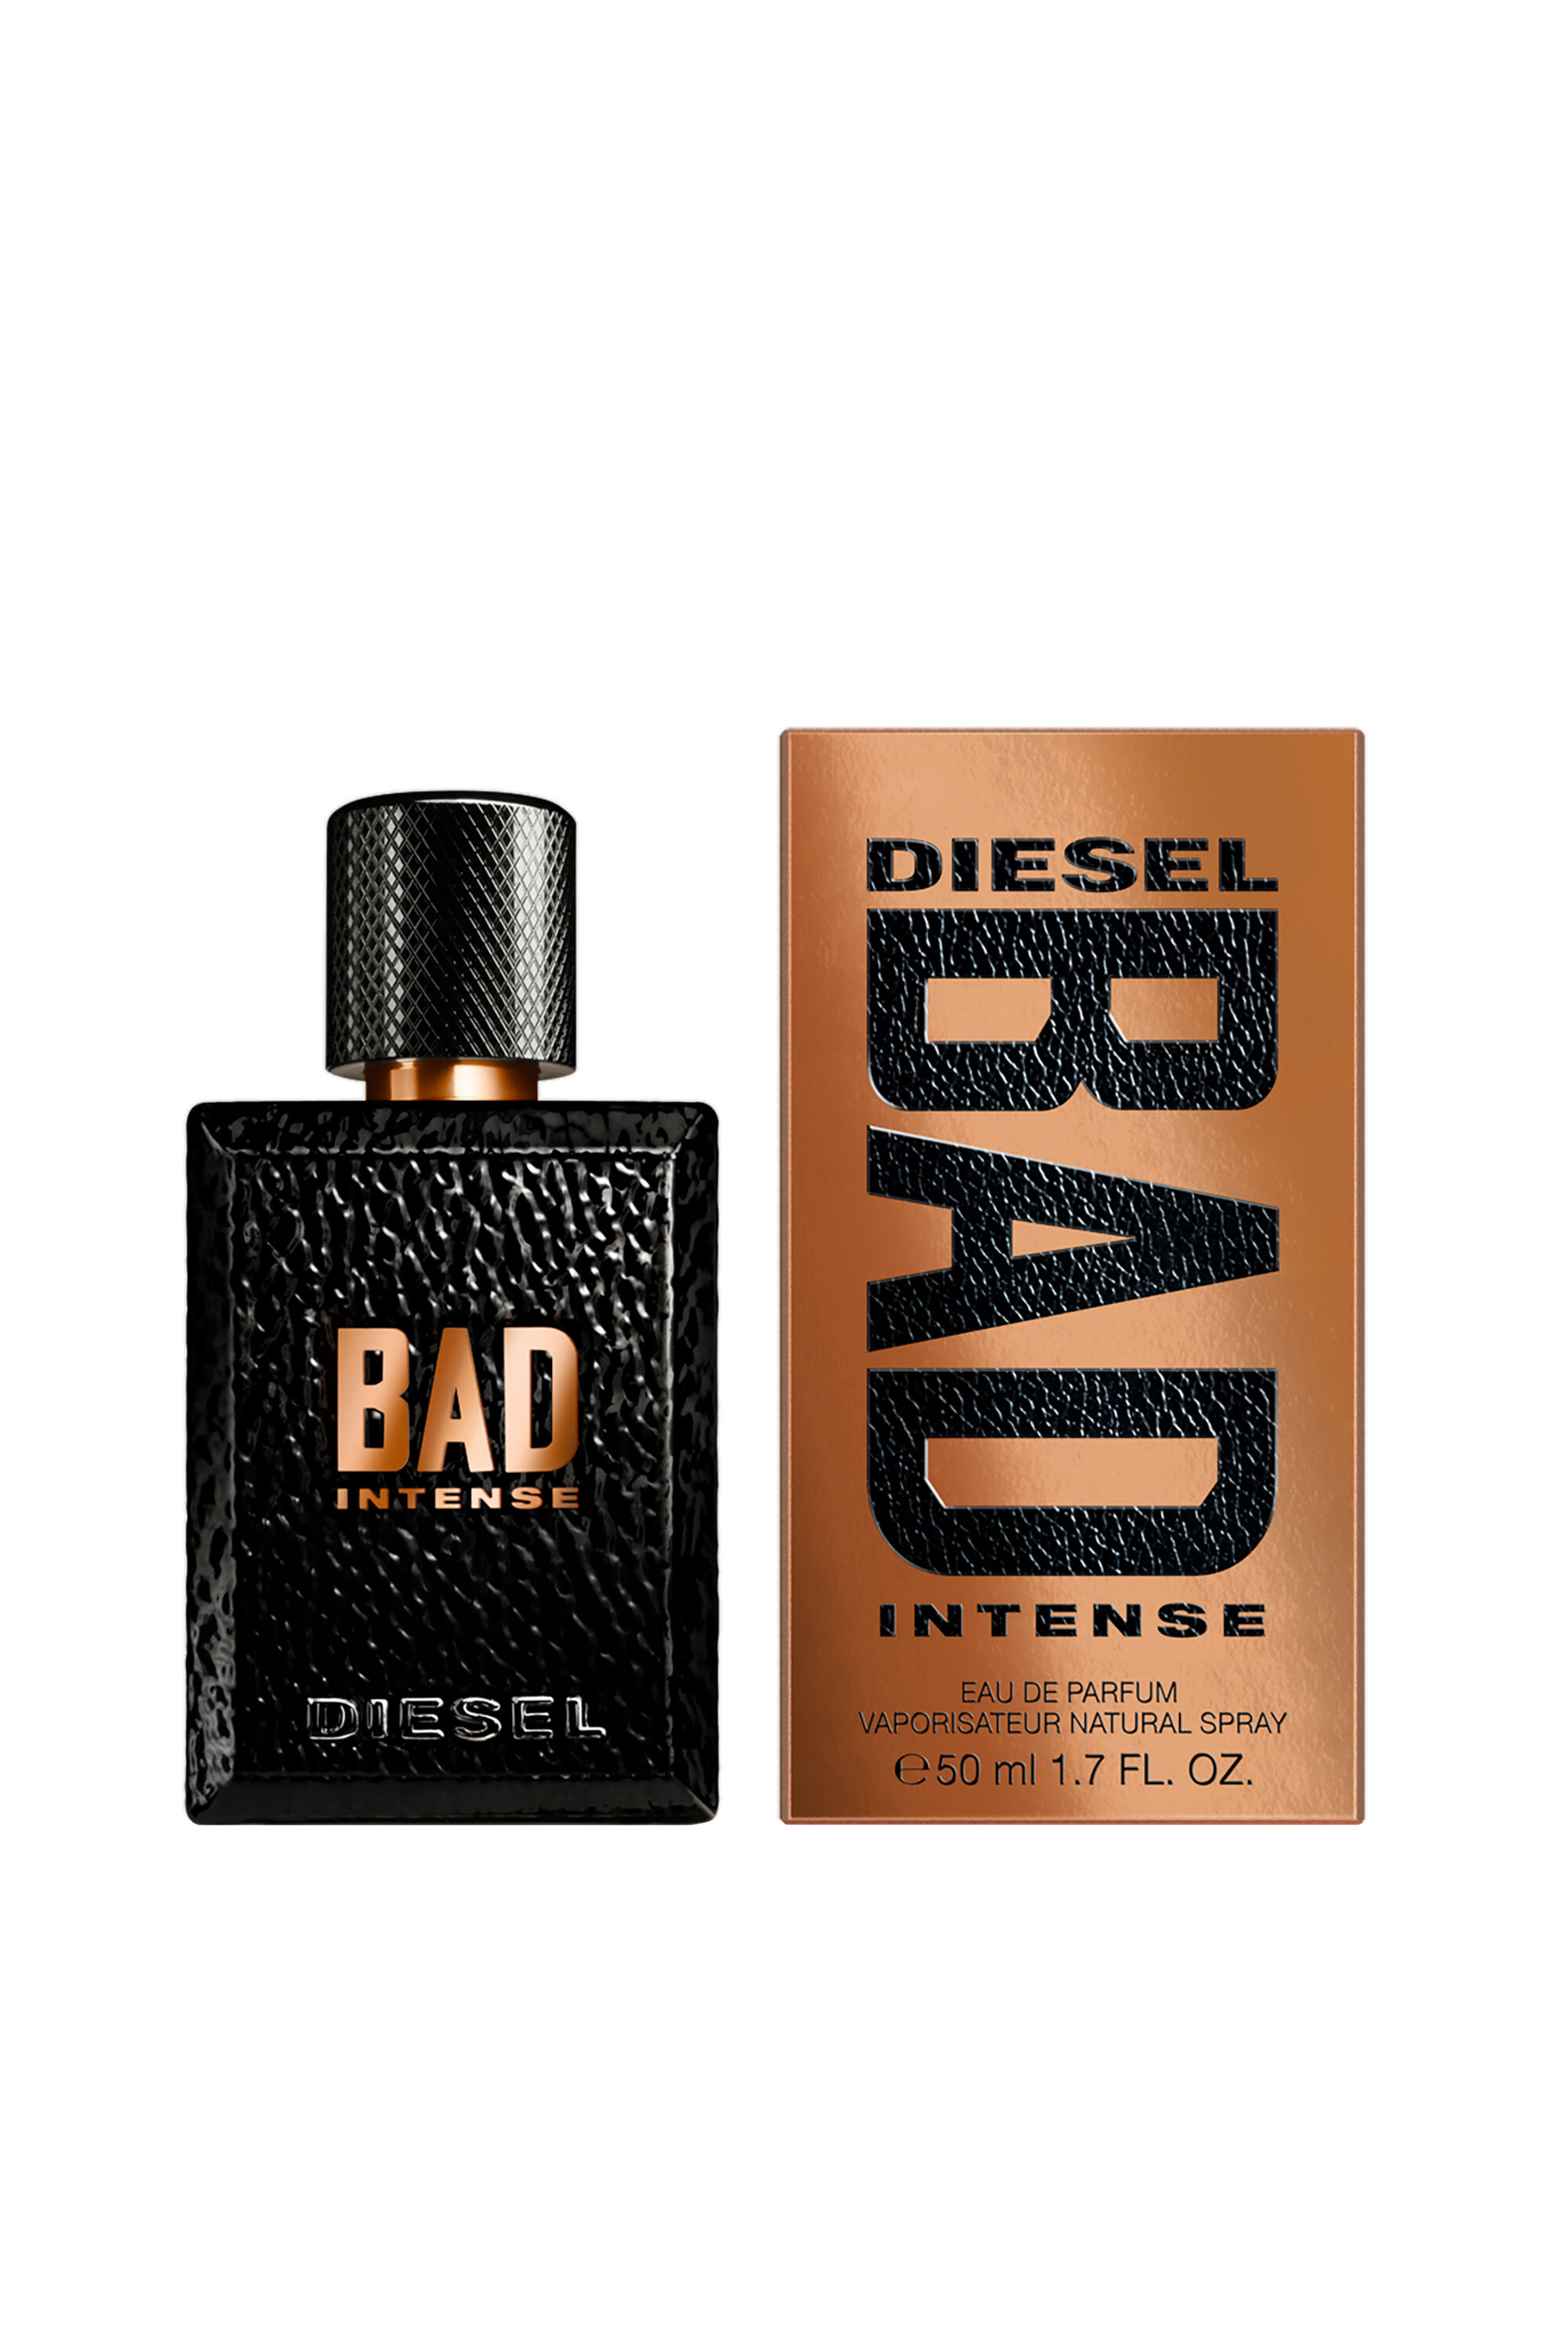 Diesel - BAD INTENSE 50ML, Generico - Image 1